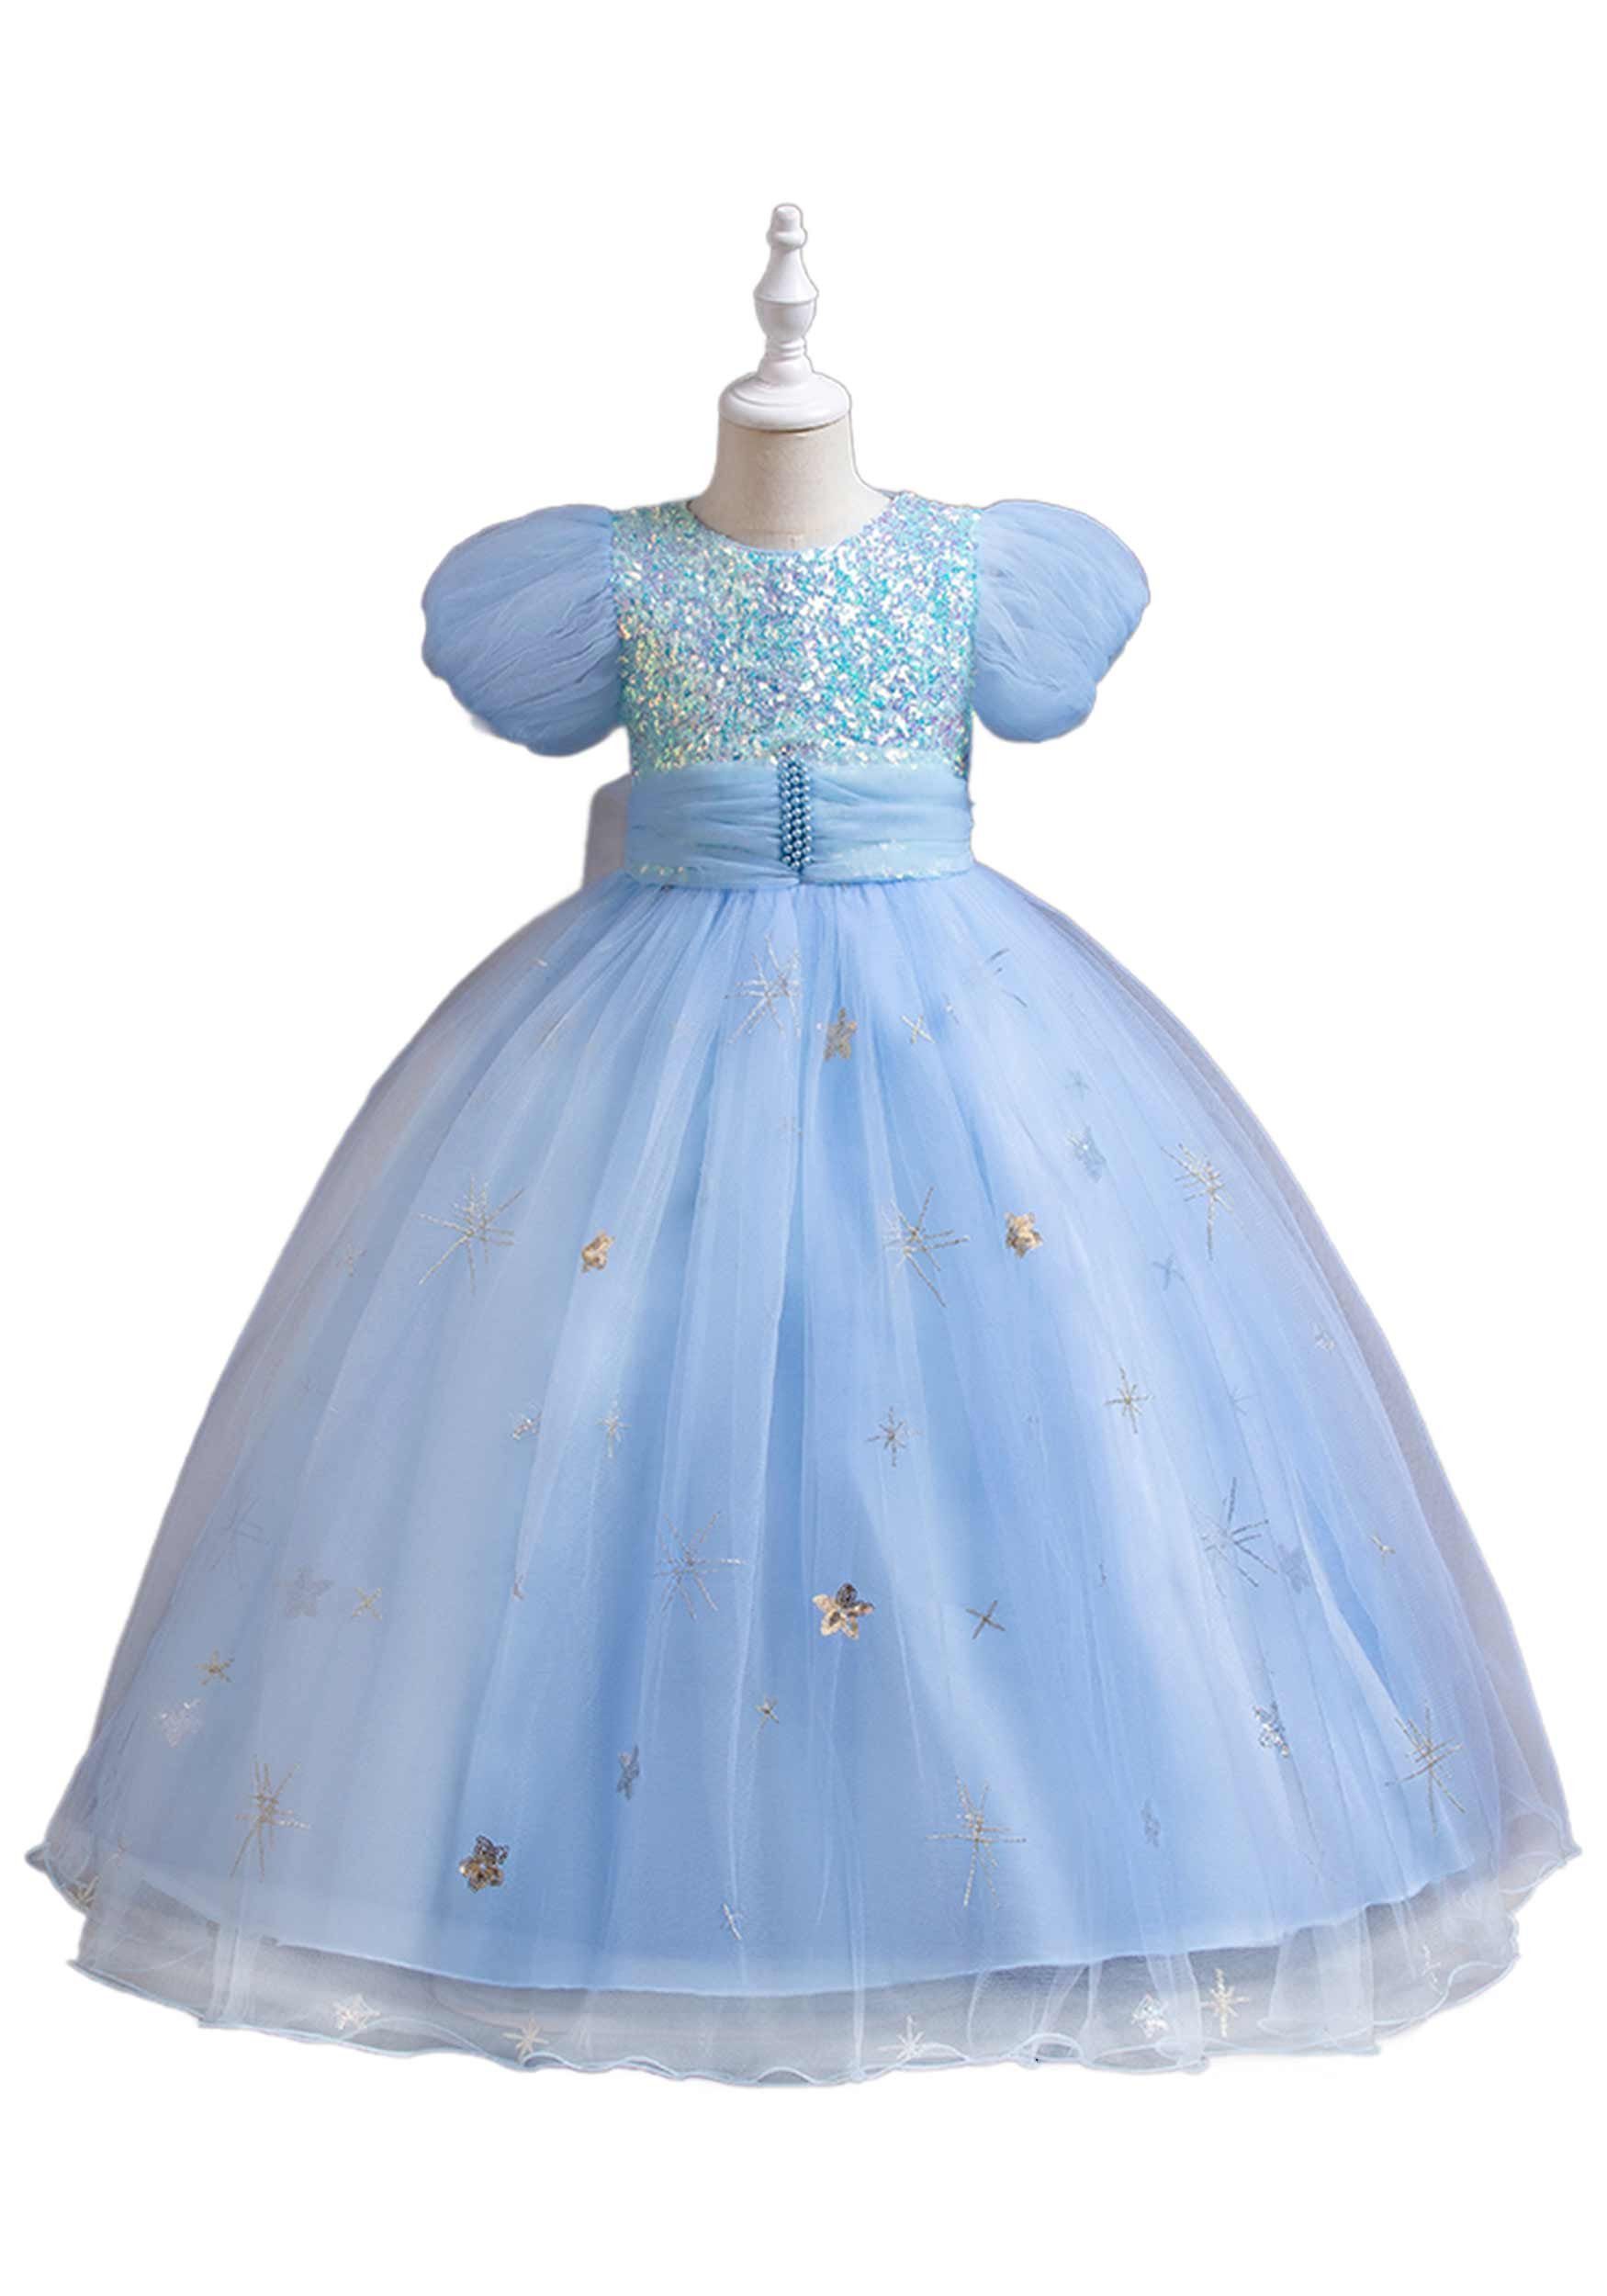 Daisred Abendkleid Tüllkleider Mädchen Prinzessinnenkleider Geburtstagsparty Blau